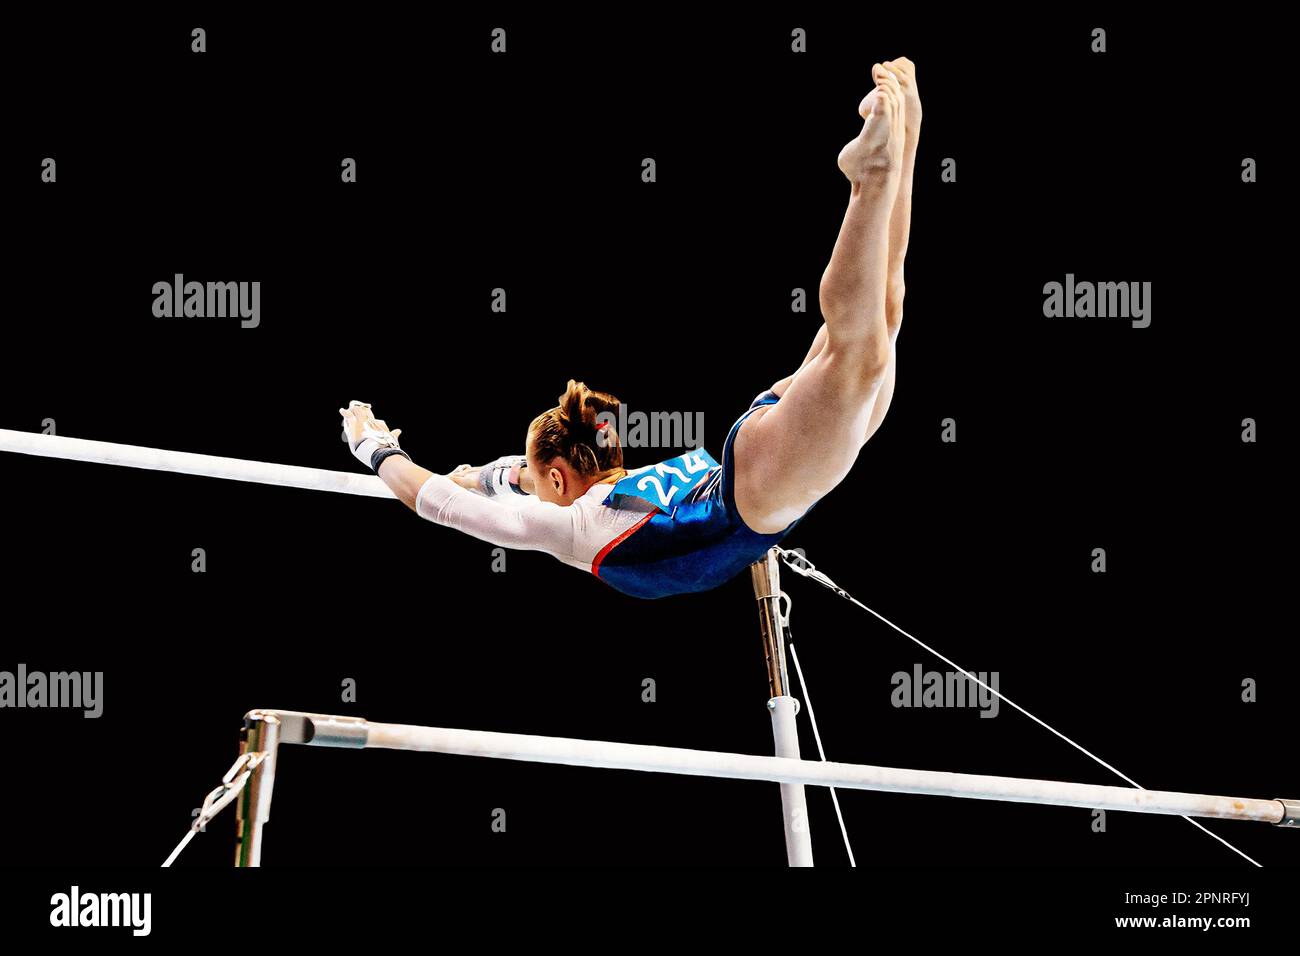 ginnastica femminile su sbarre irregolari in ginnastica artistica, elemento di volo da sbarra a sbarra, sfondo nero Foto Stock